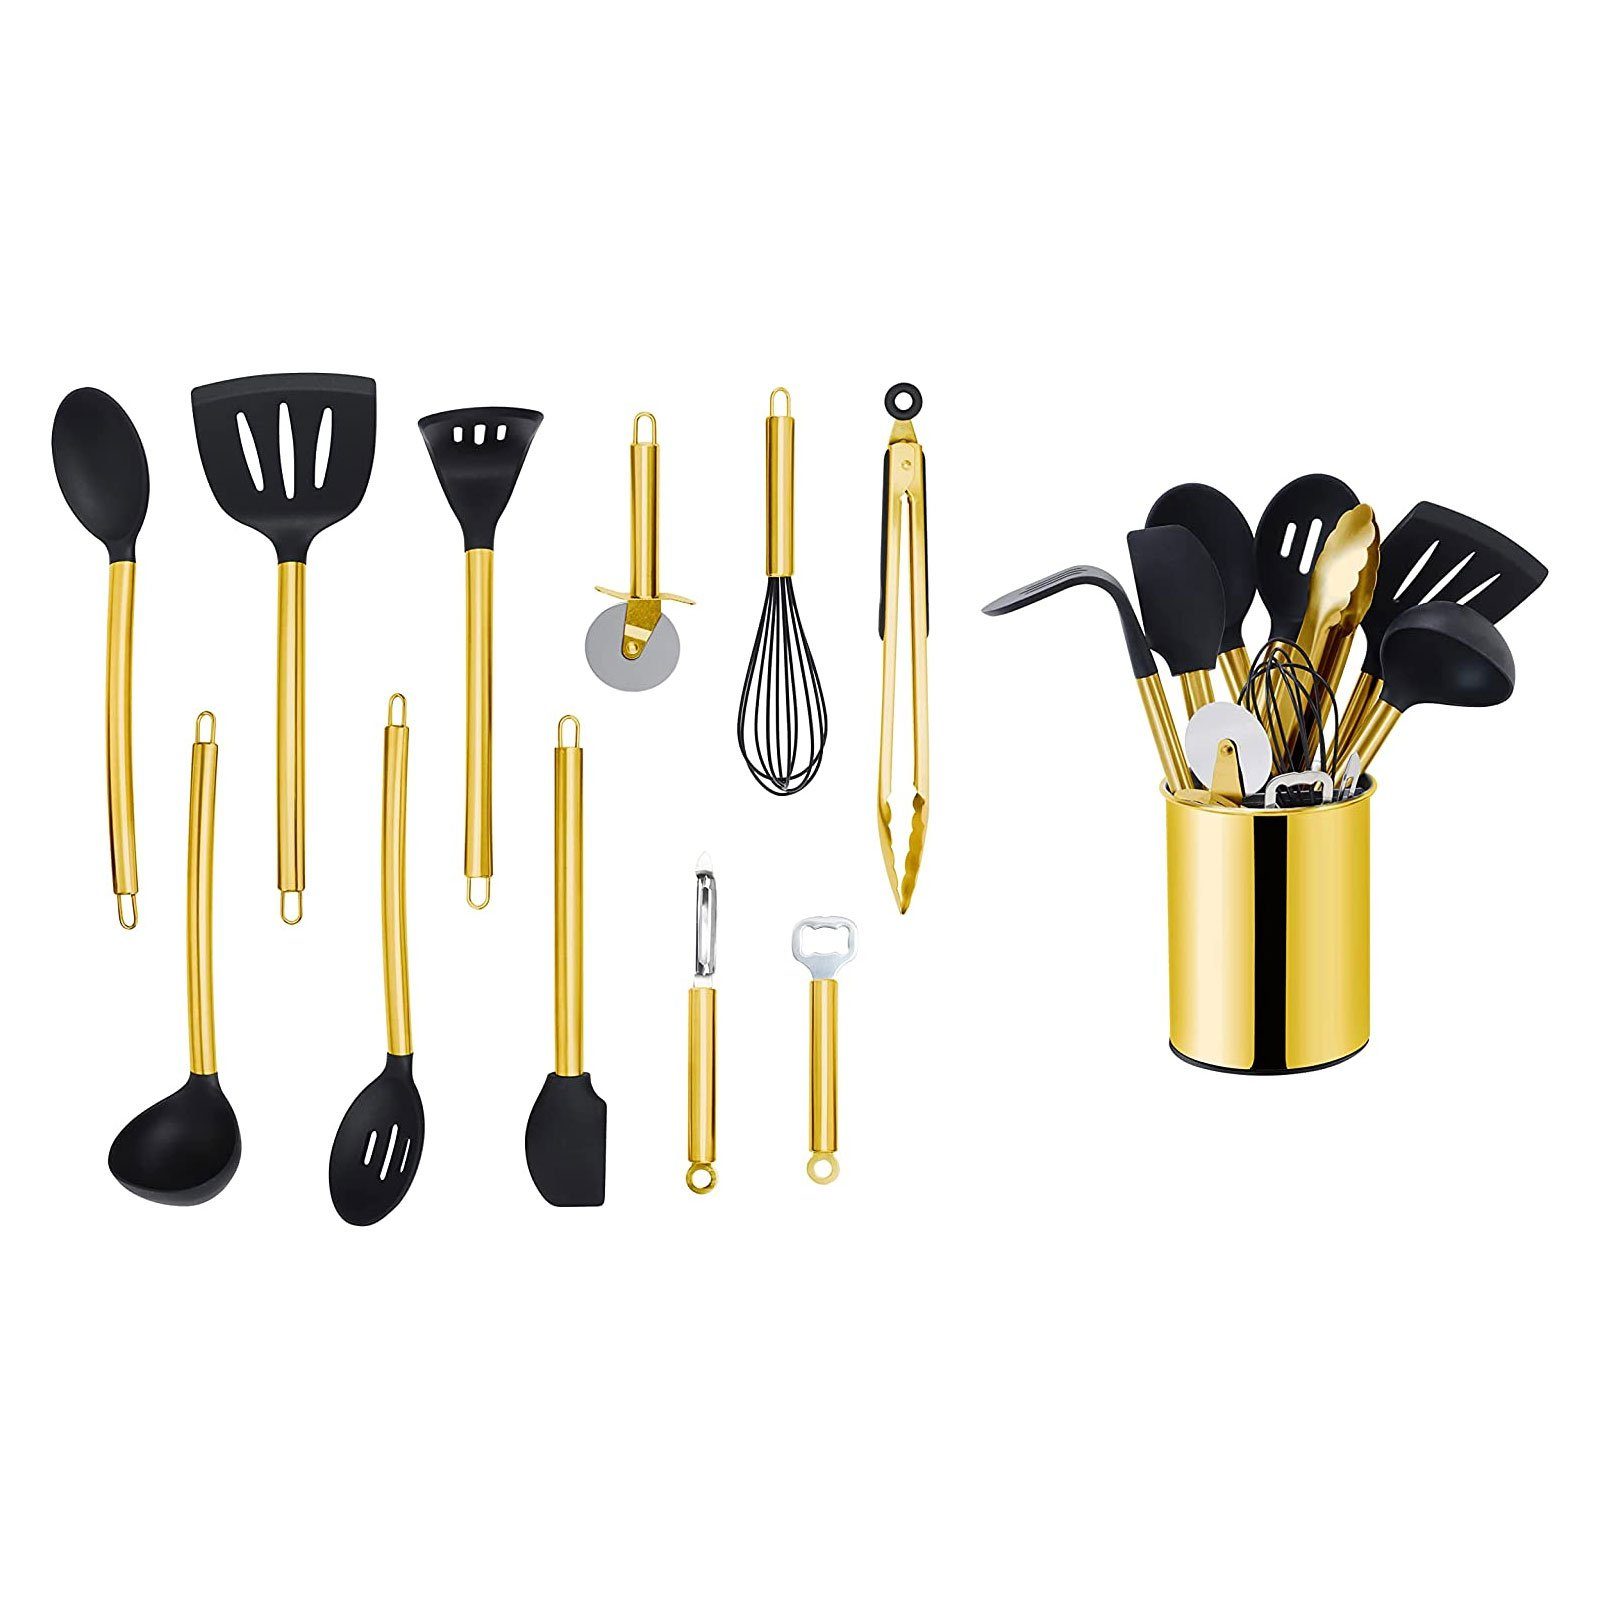 ECHTWERK Küchenorganizer-Set, Kochbesteck mit Edelstahlgriff, Utensilienhalter, Kochset mit Gold